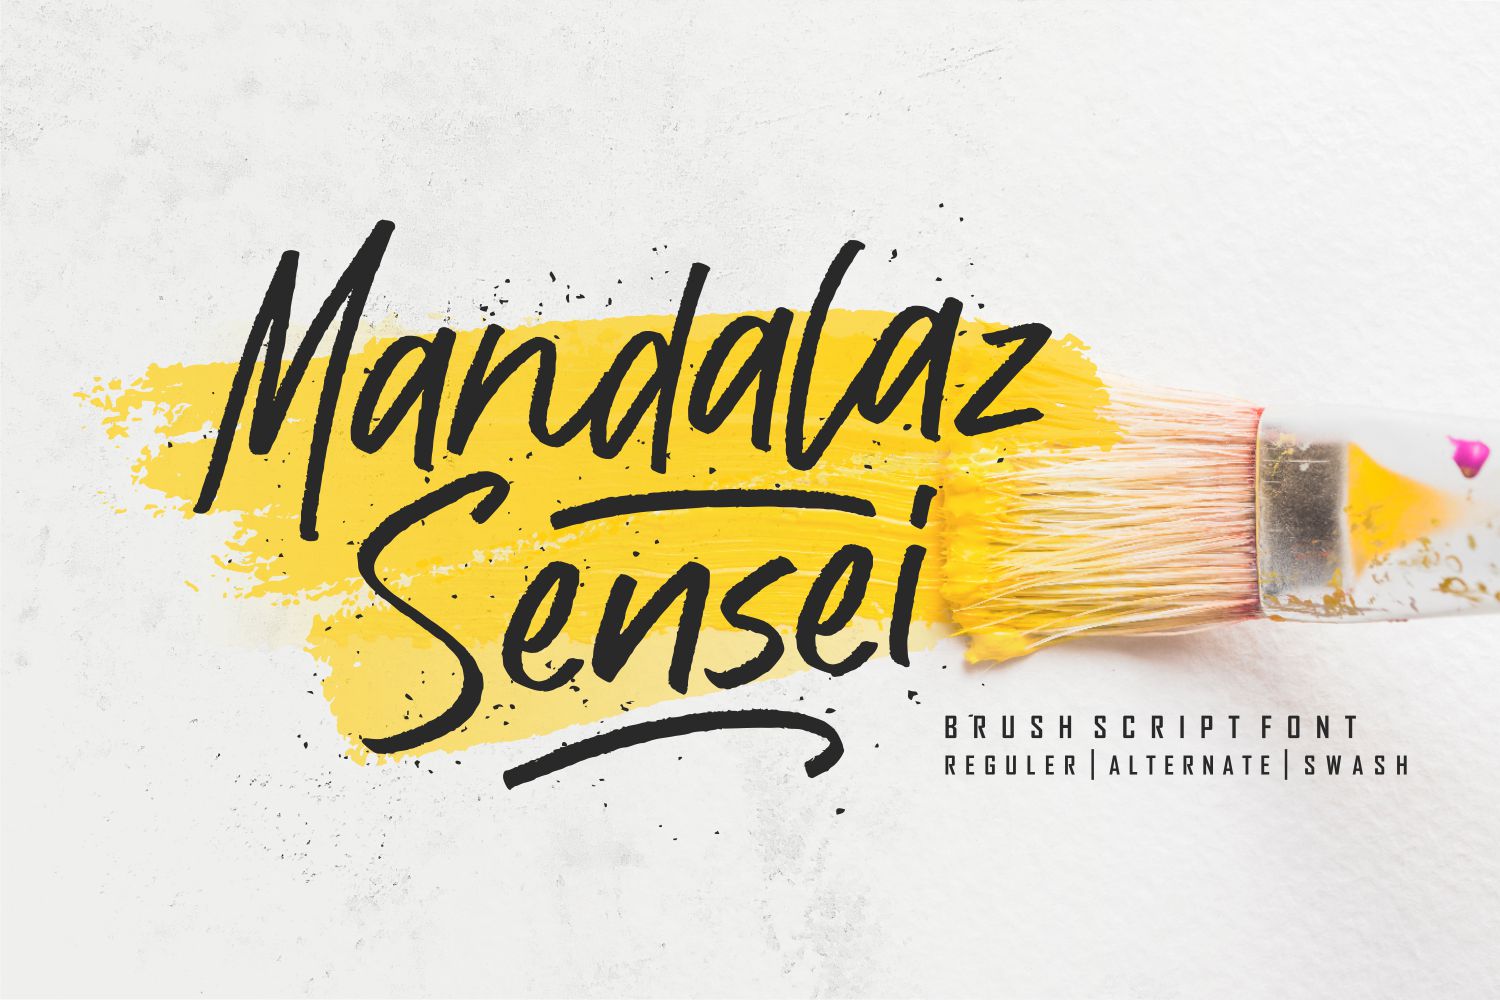 Mandalaz Sensei Demo Version